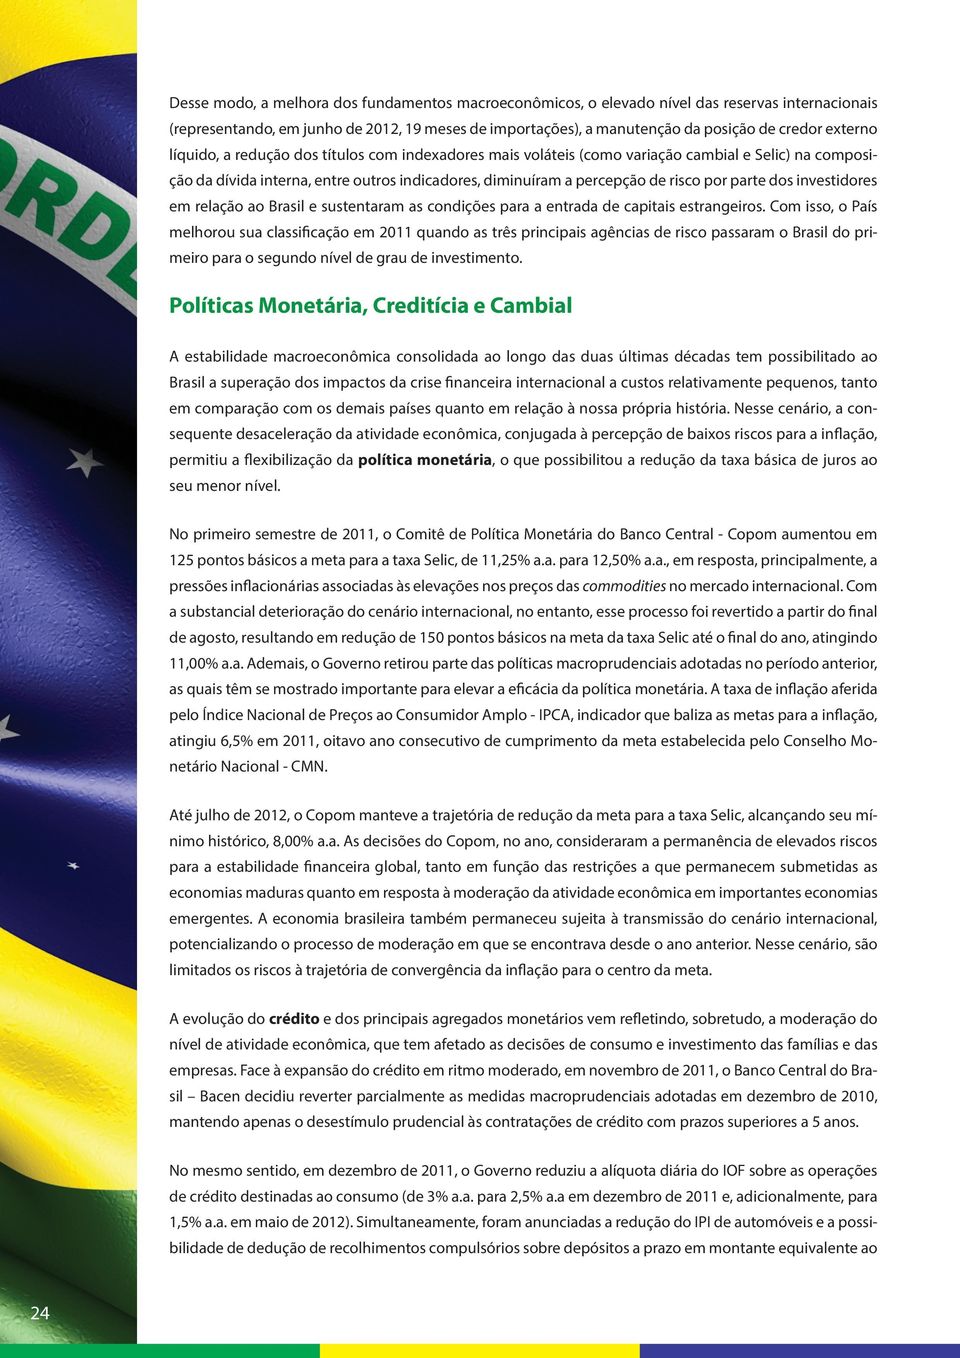 parte dos investidores em relação ao Brasil e sustentaram as condições para a entrada de capitais estrangeiros.